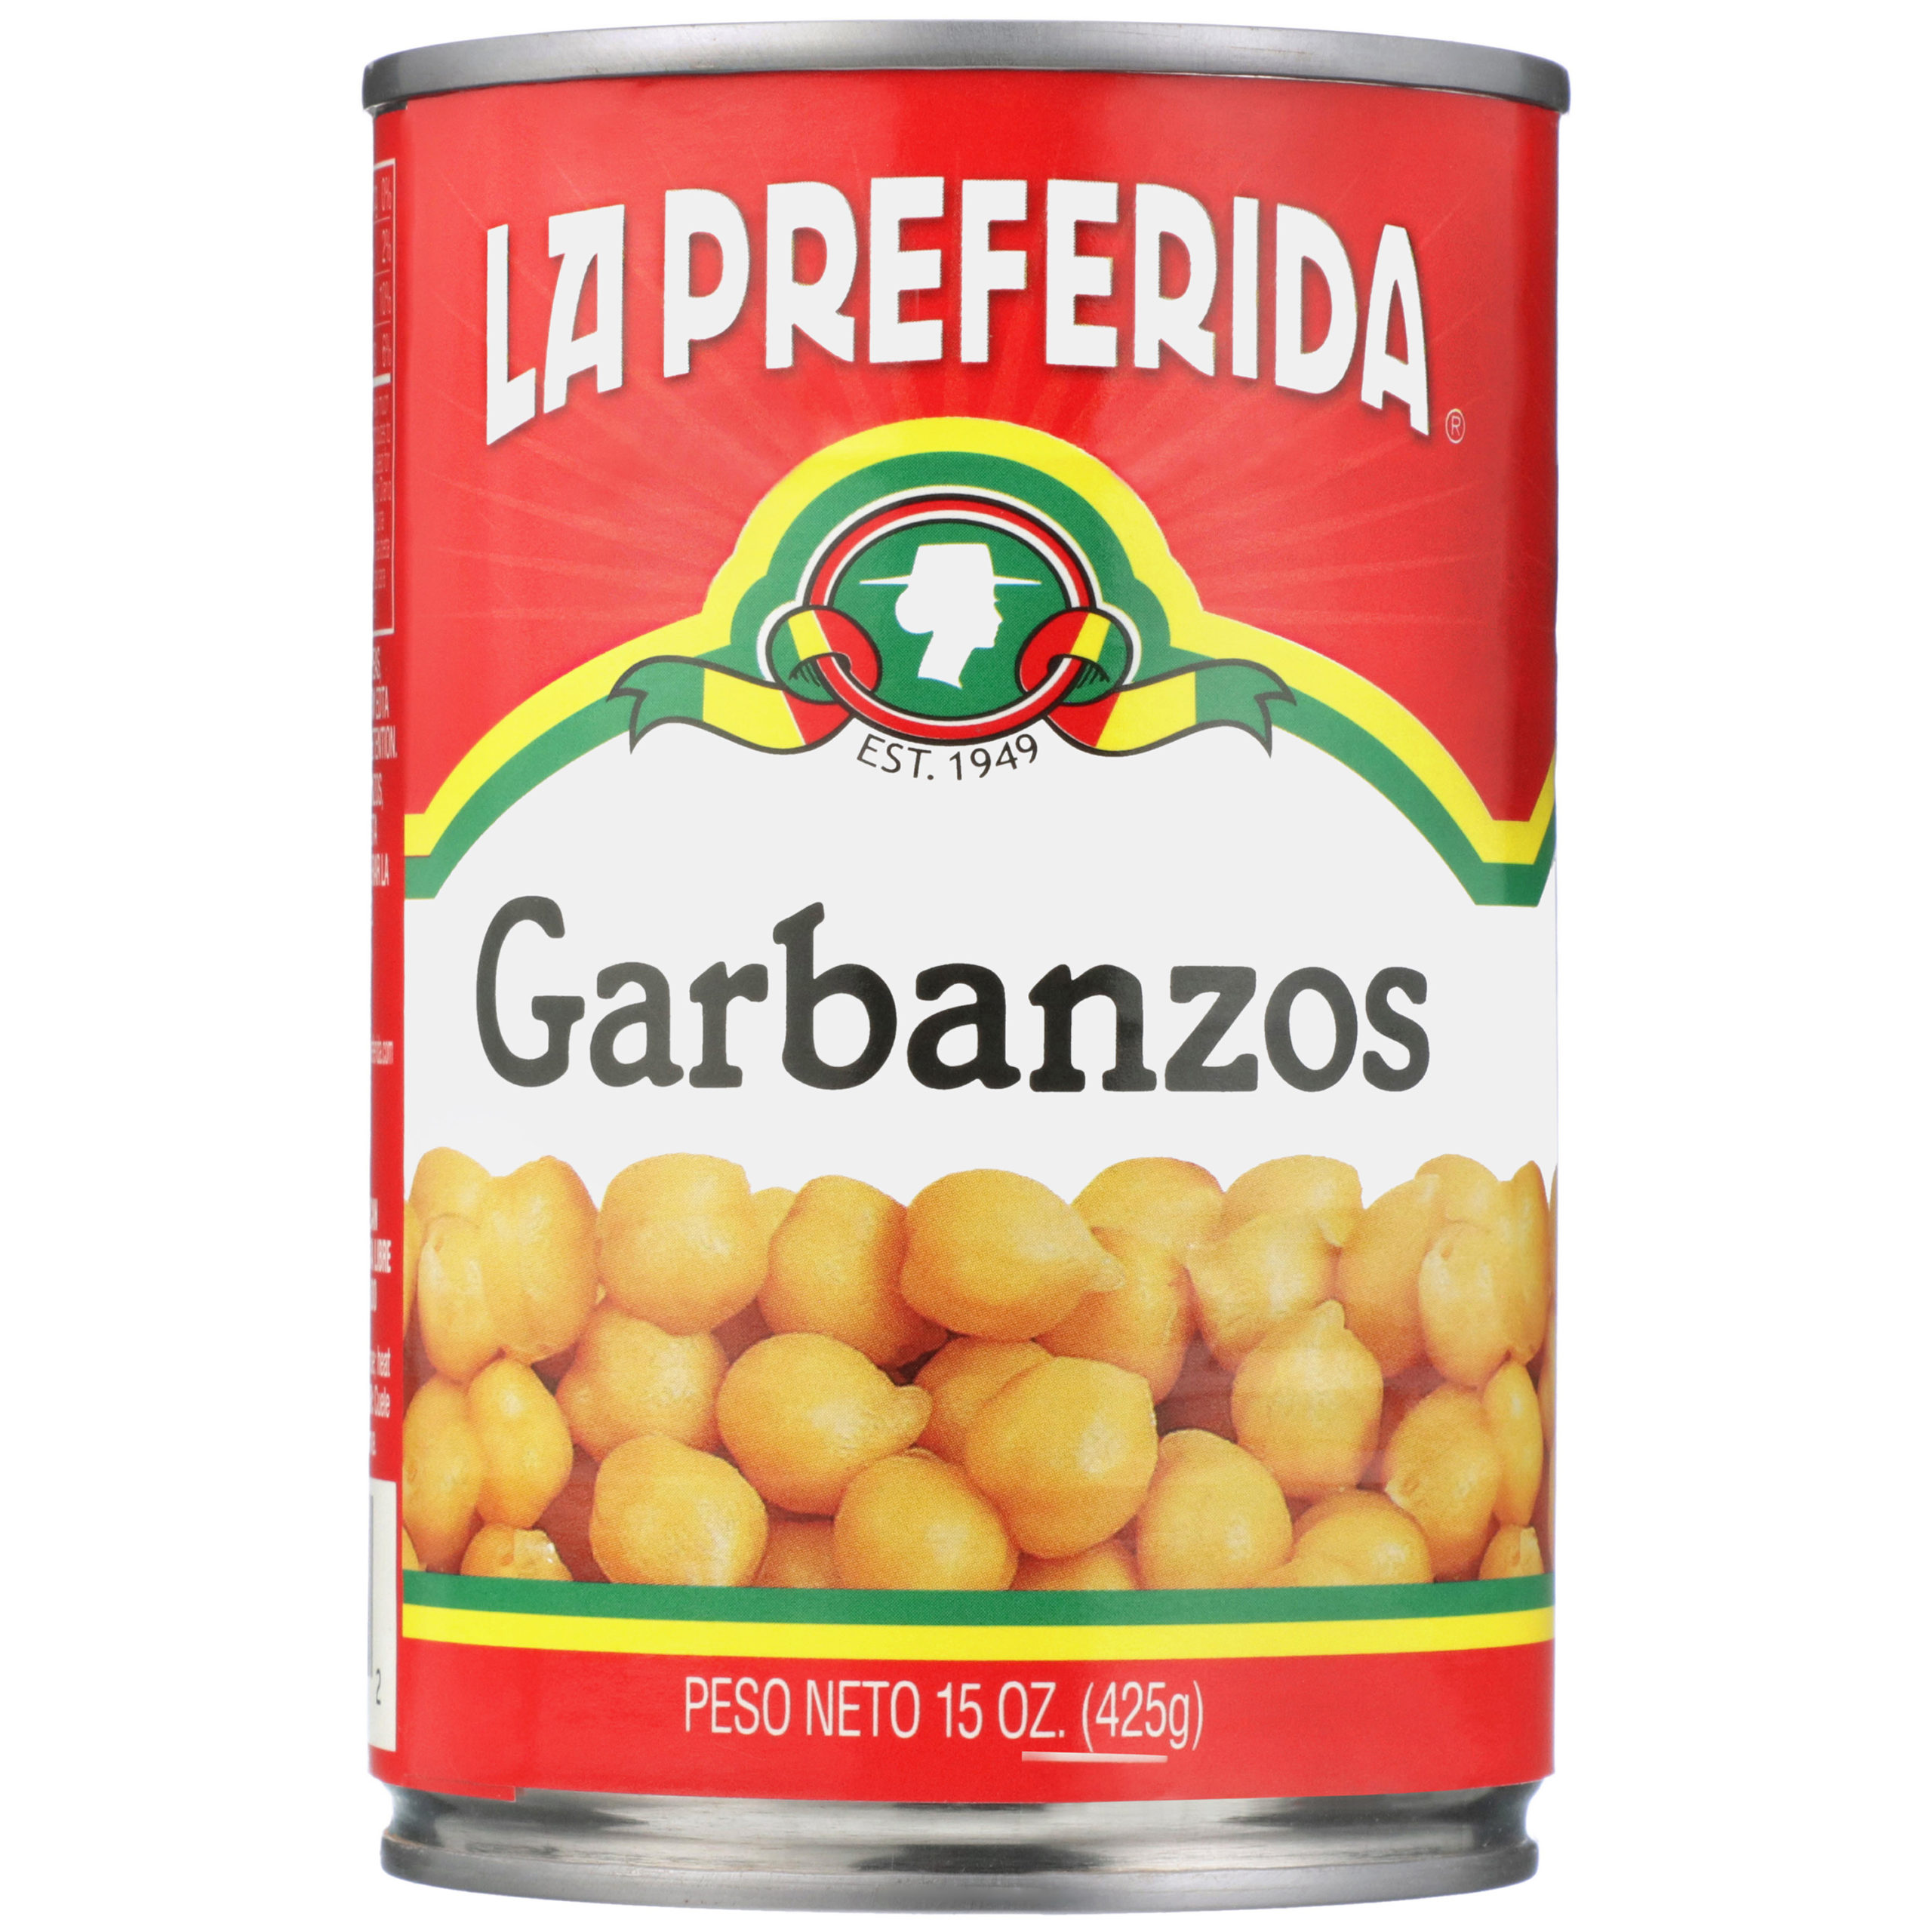 la preferida chick peas, la preferida chickpeas, la preferida garbanzos, chick peas, chickpeas, garbanzos, canned chick peas, canned chickpeas, canned garbanzos